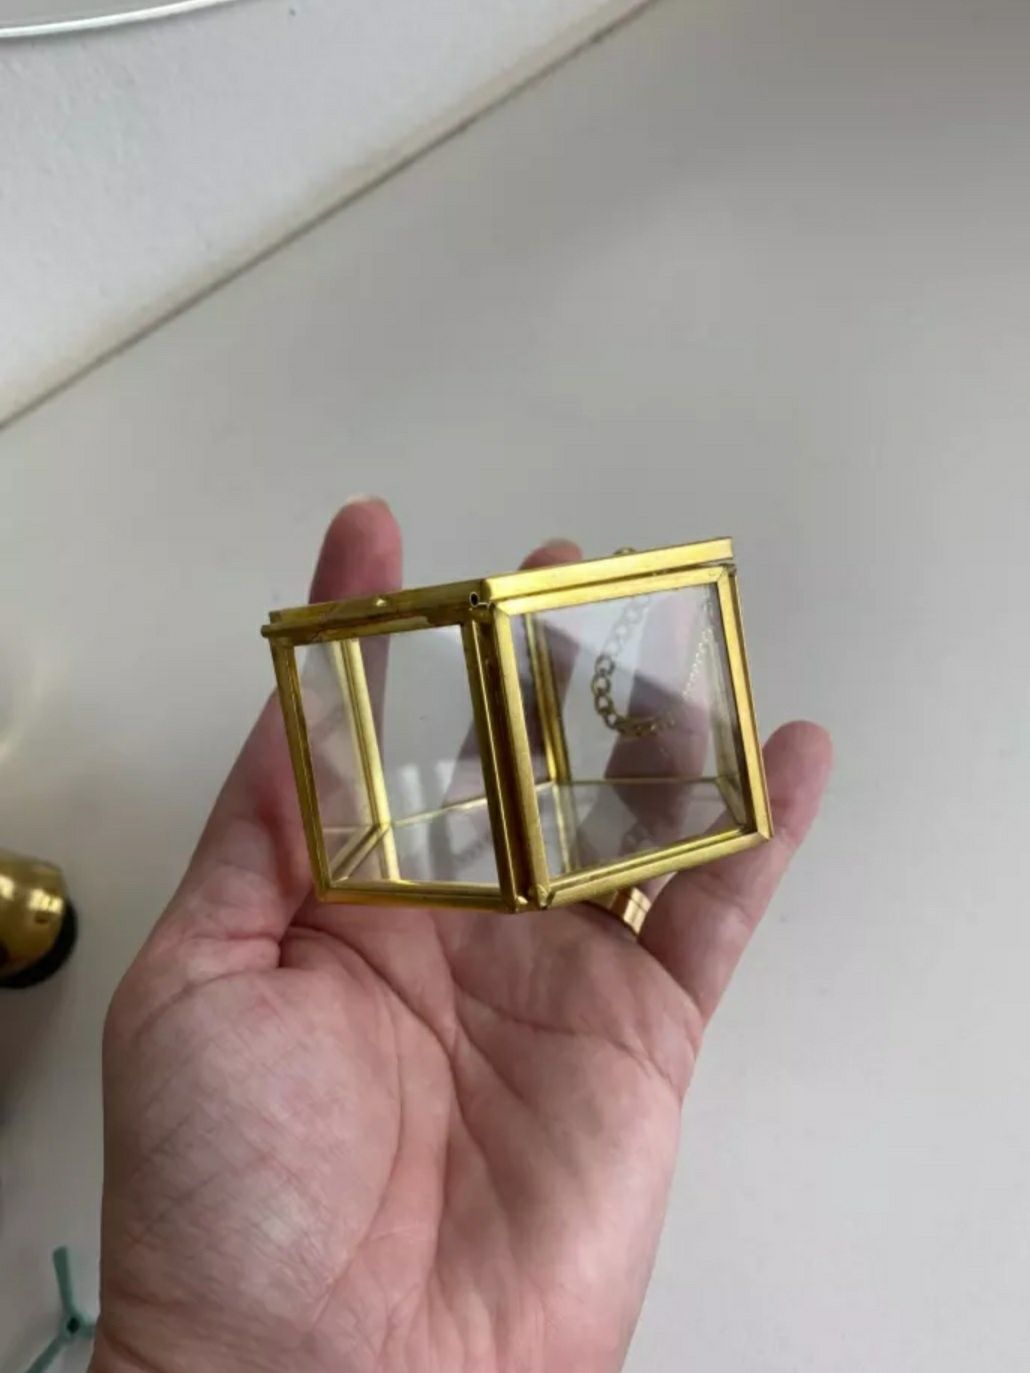 Pudełko szklane na obrączki ślubne w kolorze złotym